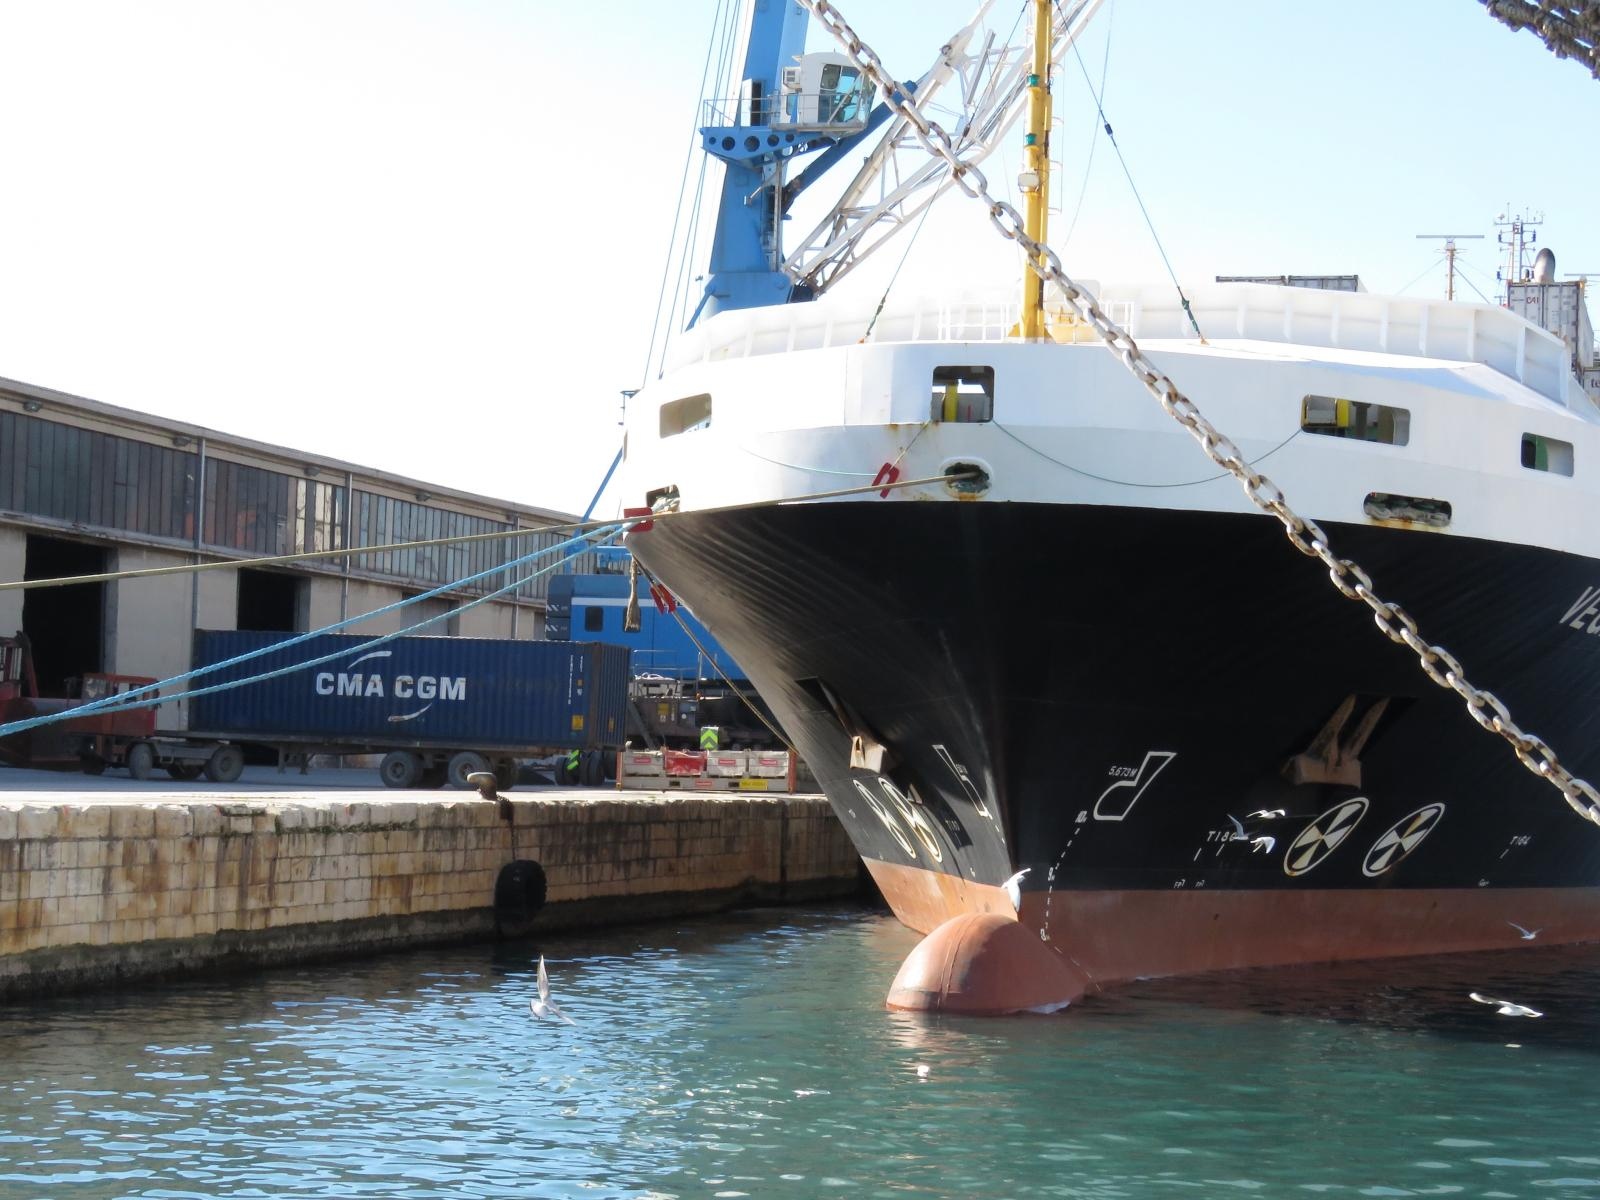 19.02.2015., Split - U splitskoj sjevernoj luci smrtno je stradao muskarac prilikom utovara kontejnera na brod. Photo: Ivo Cagalj/PIXSELL